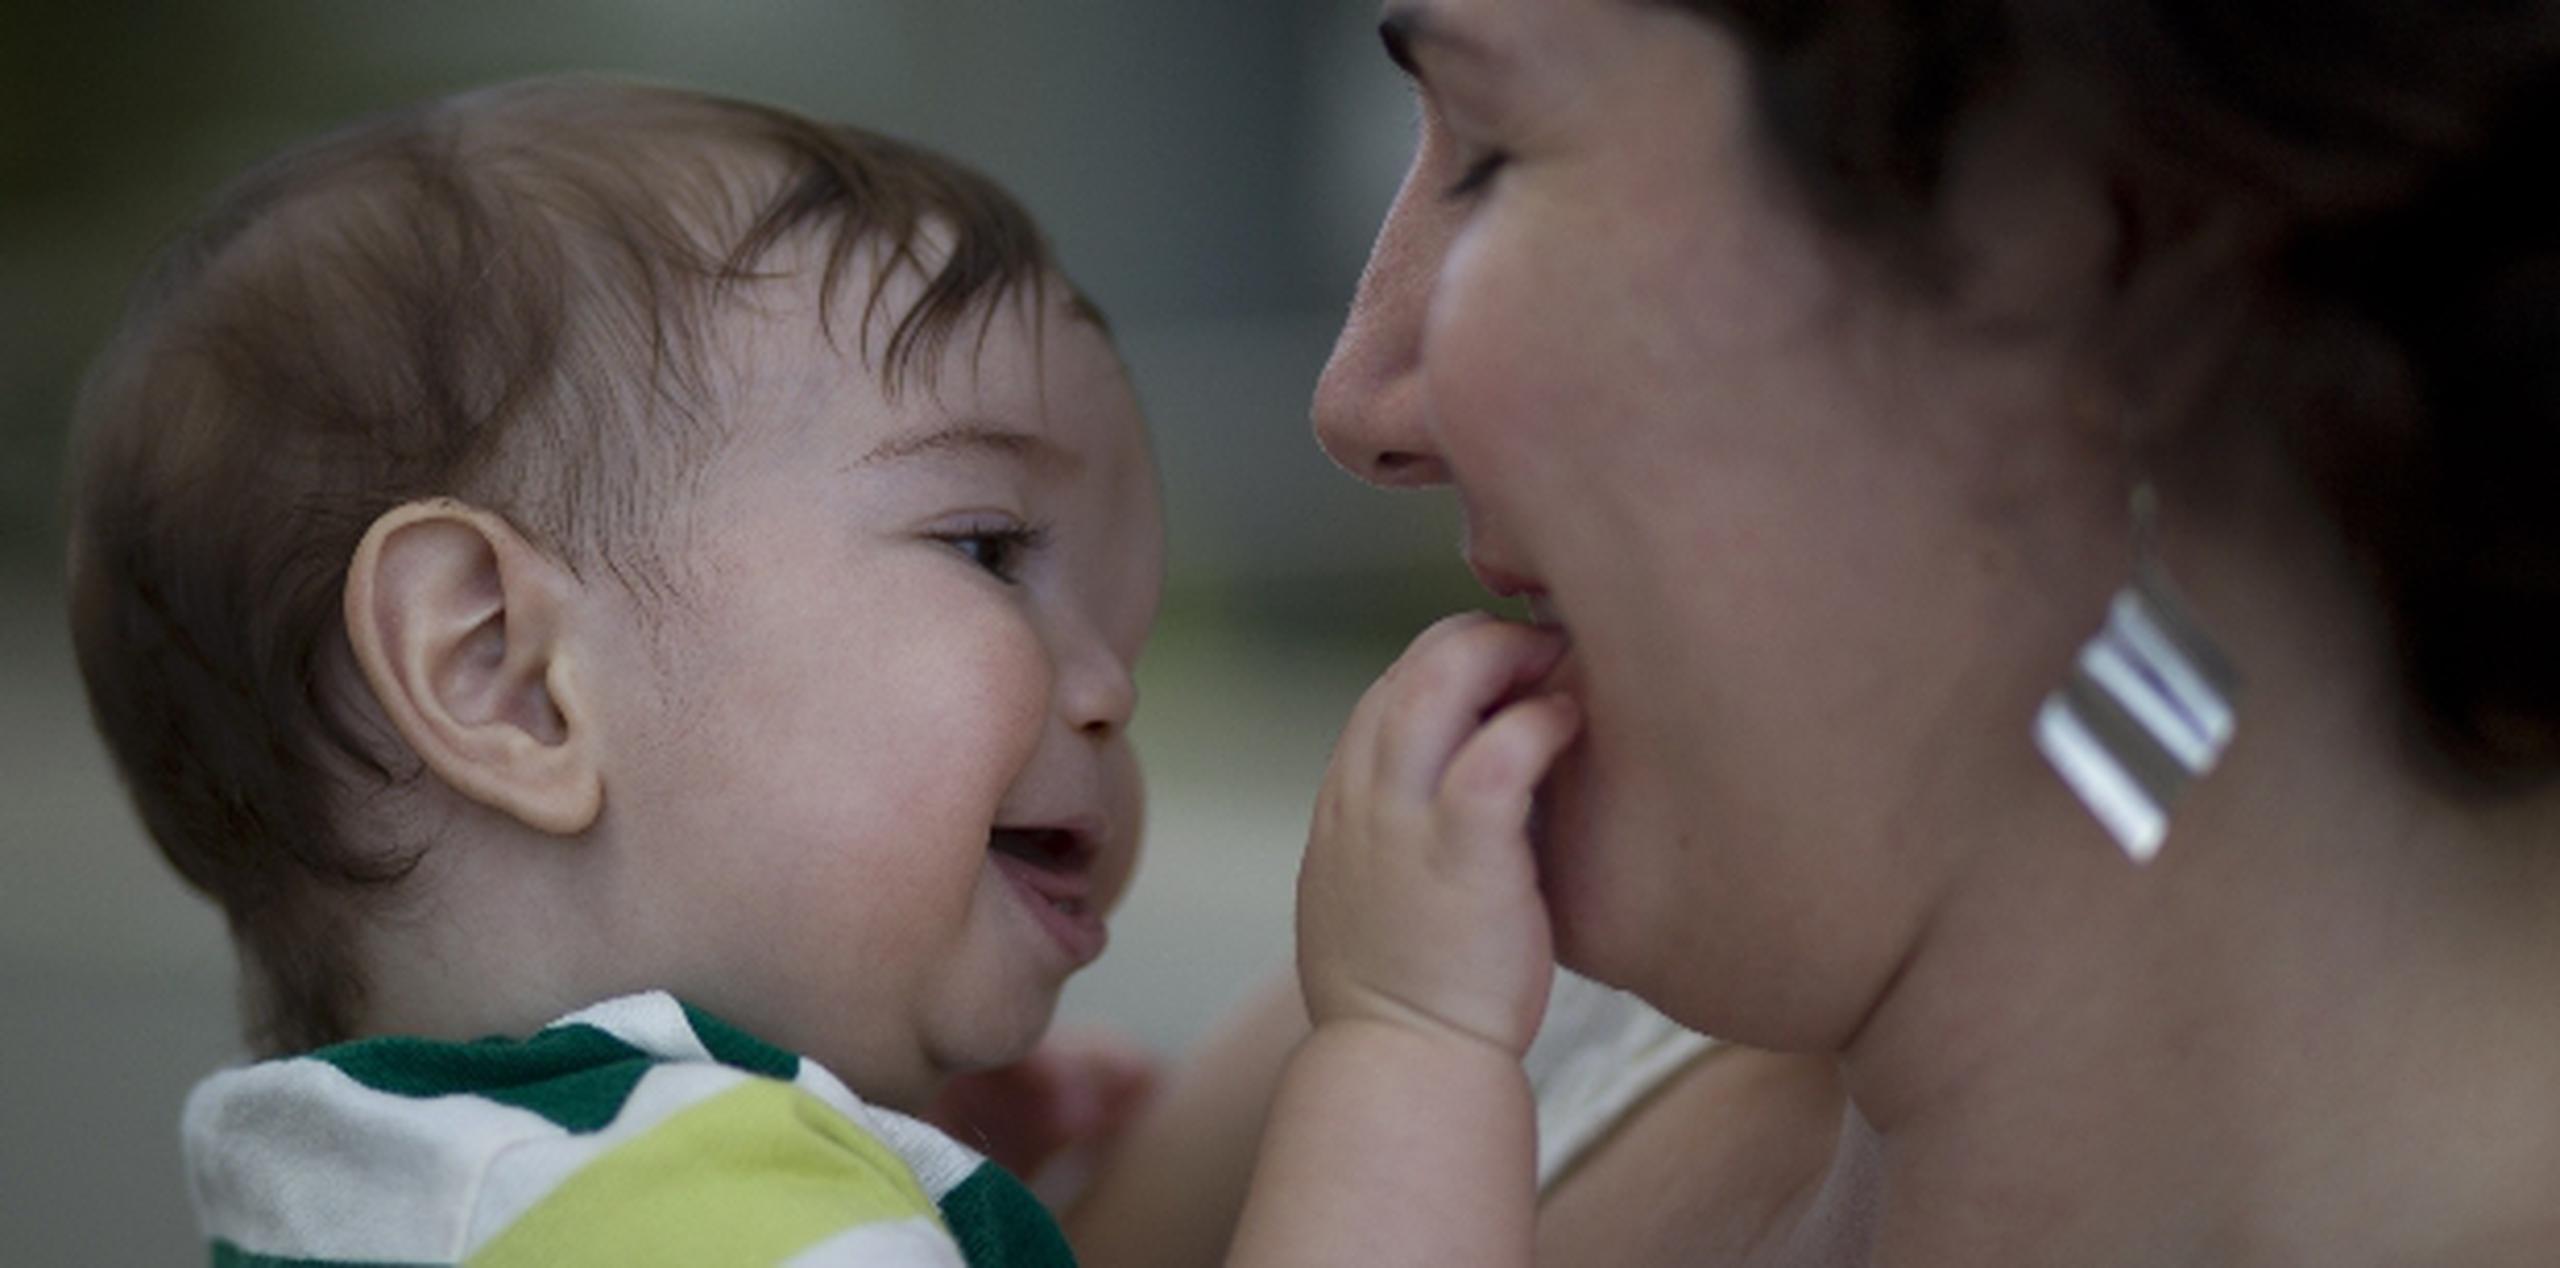 La madre de Emiliano dijo estar feliz y sorprendida de la pronta recuperación del menor. (xavier.araujo@gfrmedia.com)